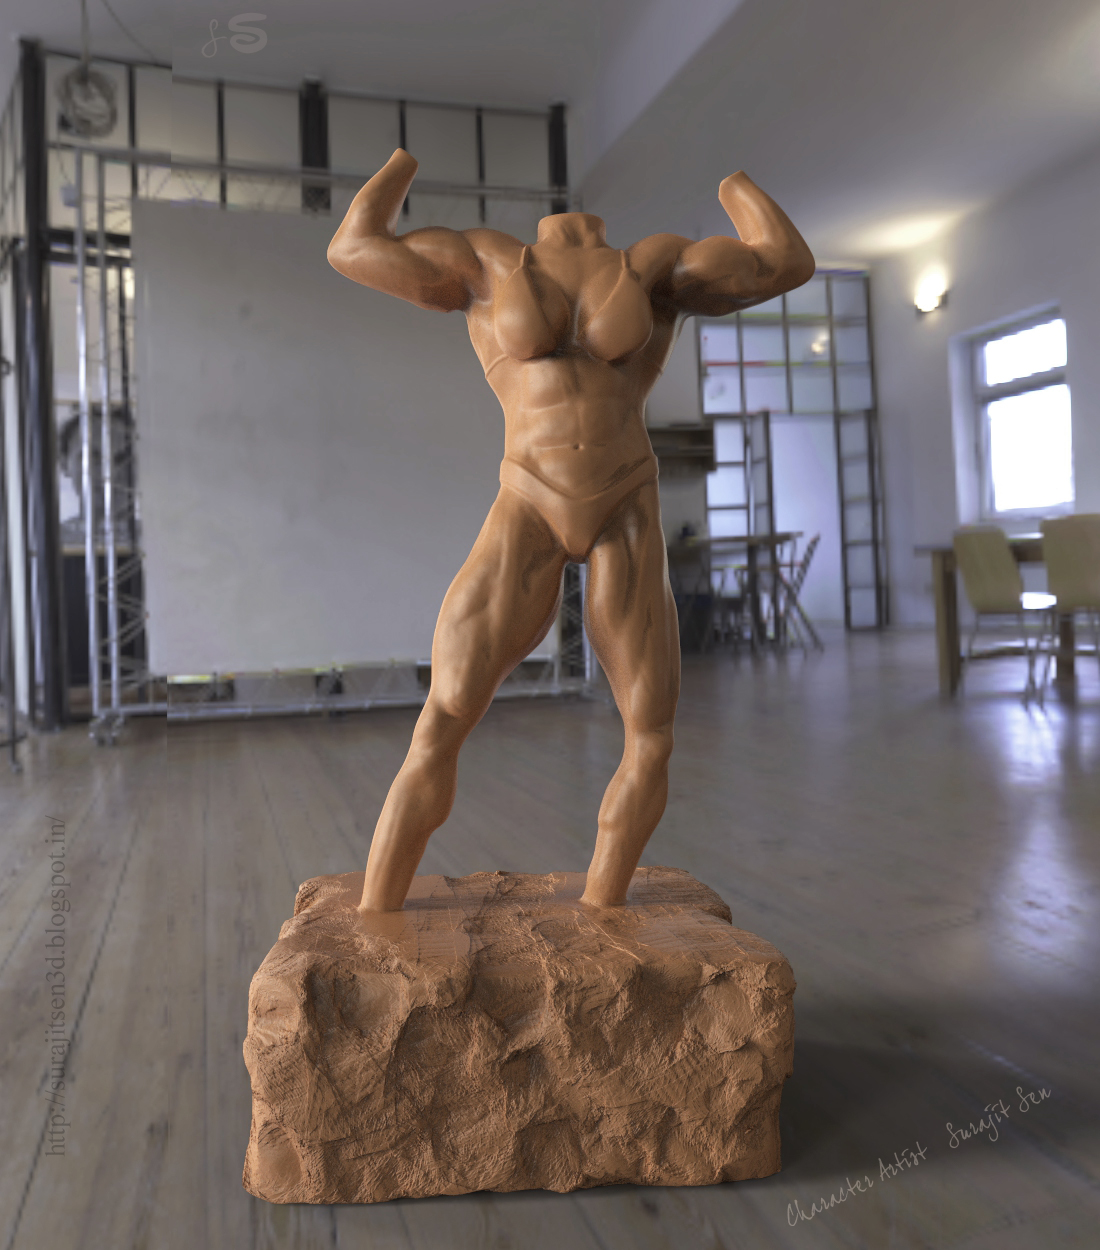 IFBB Figure_Sculpt_by Surajit Sen.JPG